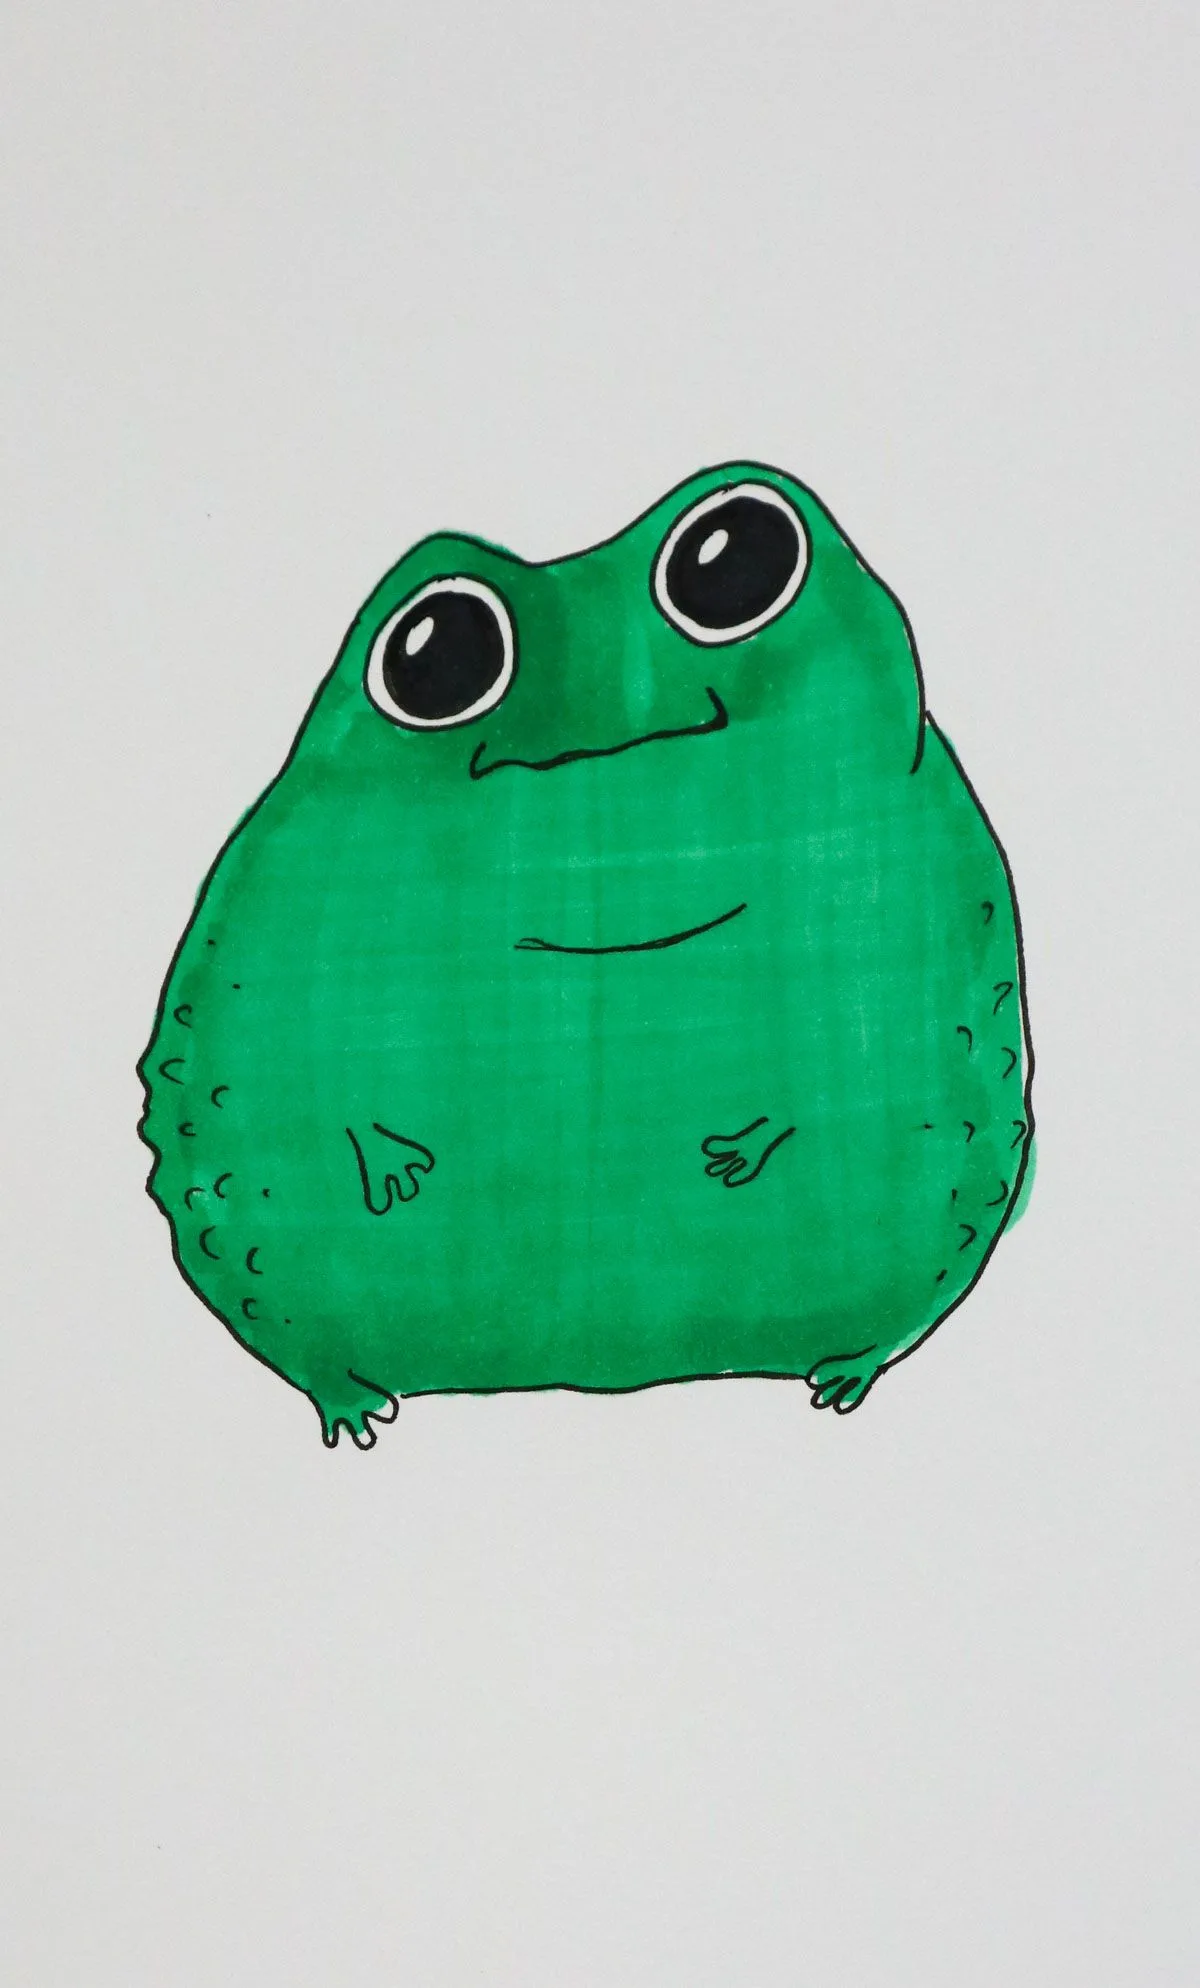 bumpy frog drawing